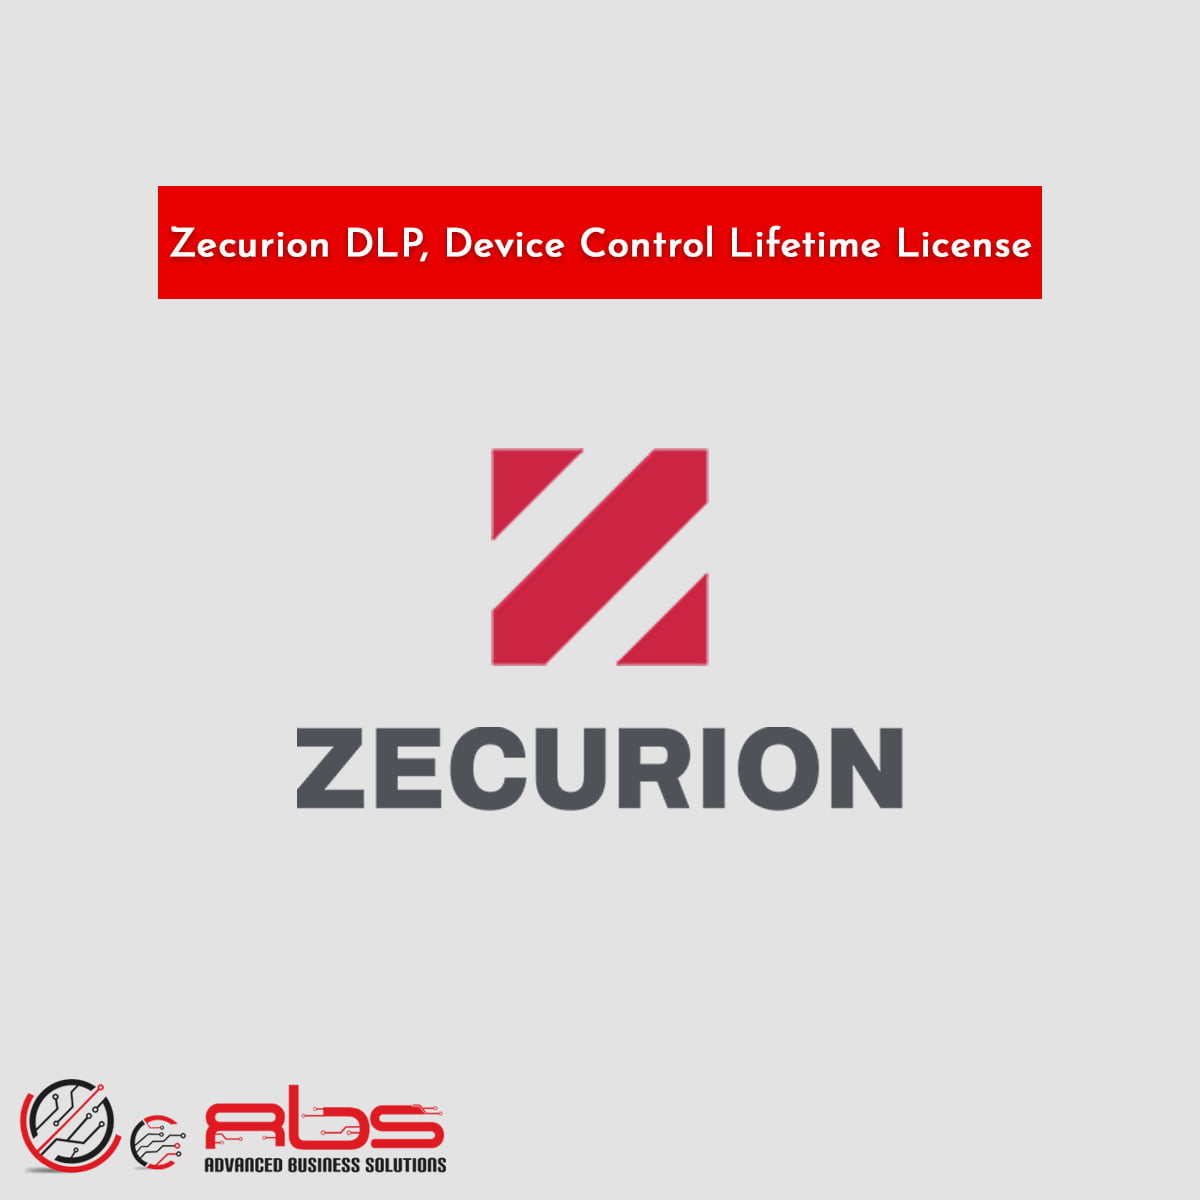 Zecurion DLP, Device Control Lifetime License